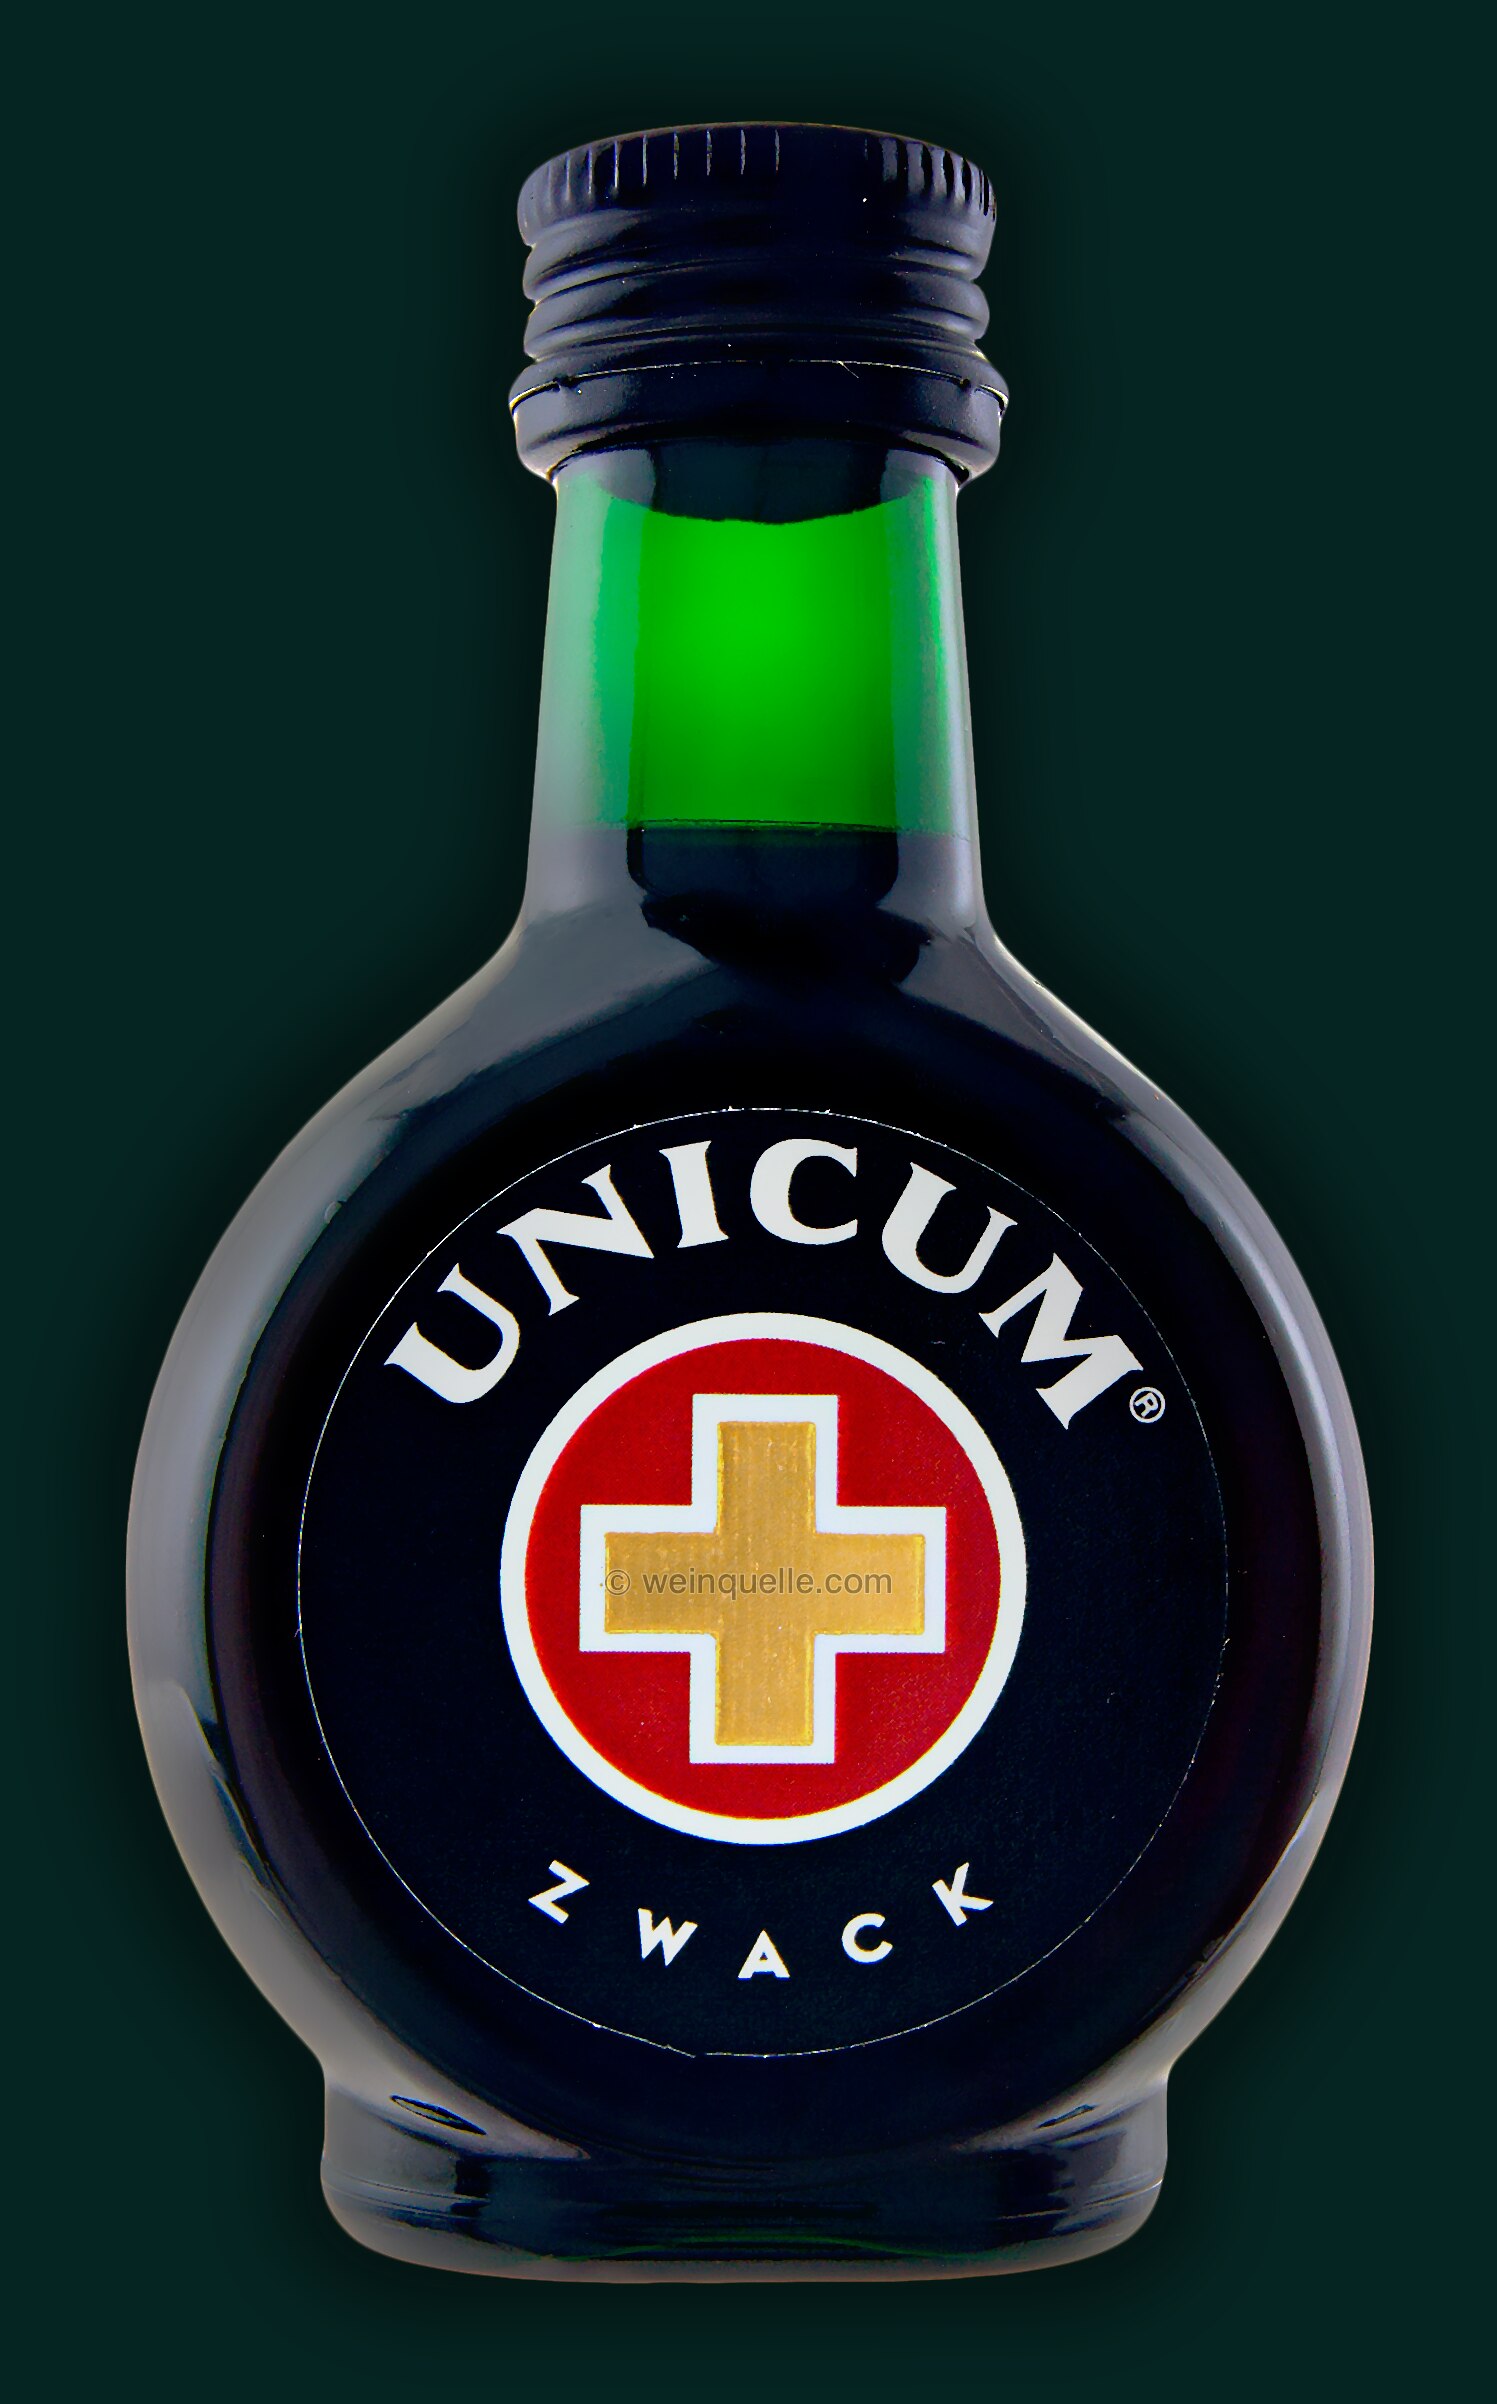 Kräuterlikör € Zwack Ungarn Liter, Unicum PET - 2,30 Weinquelle Lühmann 0,04